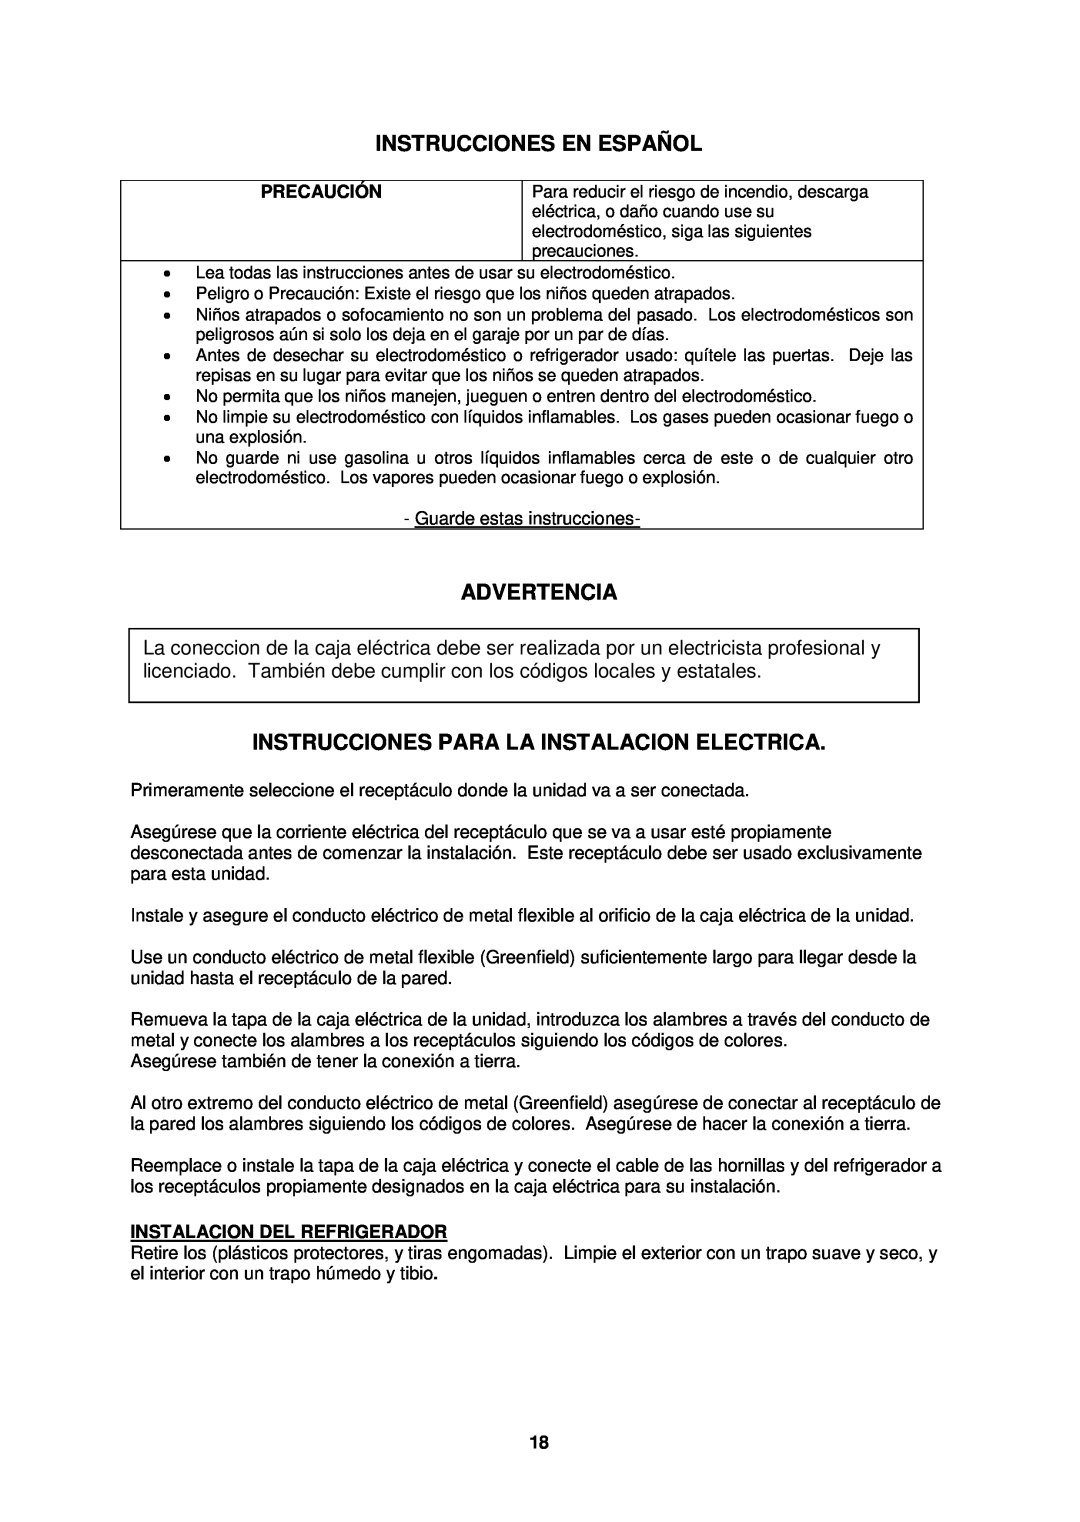 Avanti CK3016 Instrucciones En Español, Advertencia, Instrucciones Para La Instalacion Electrica, Precaución 